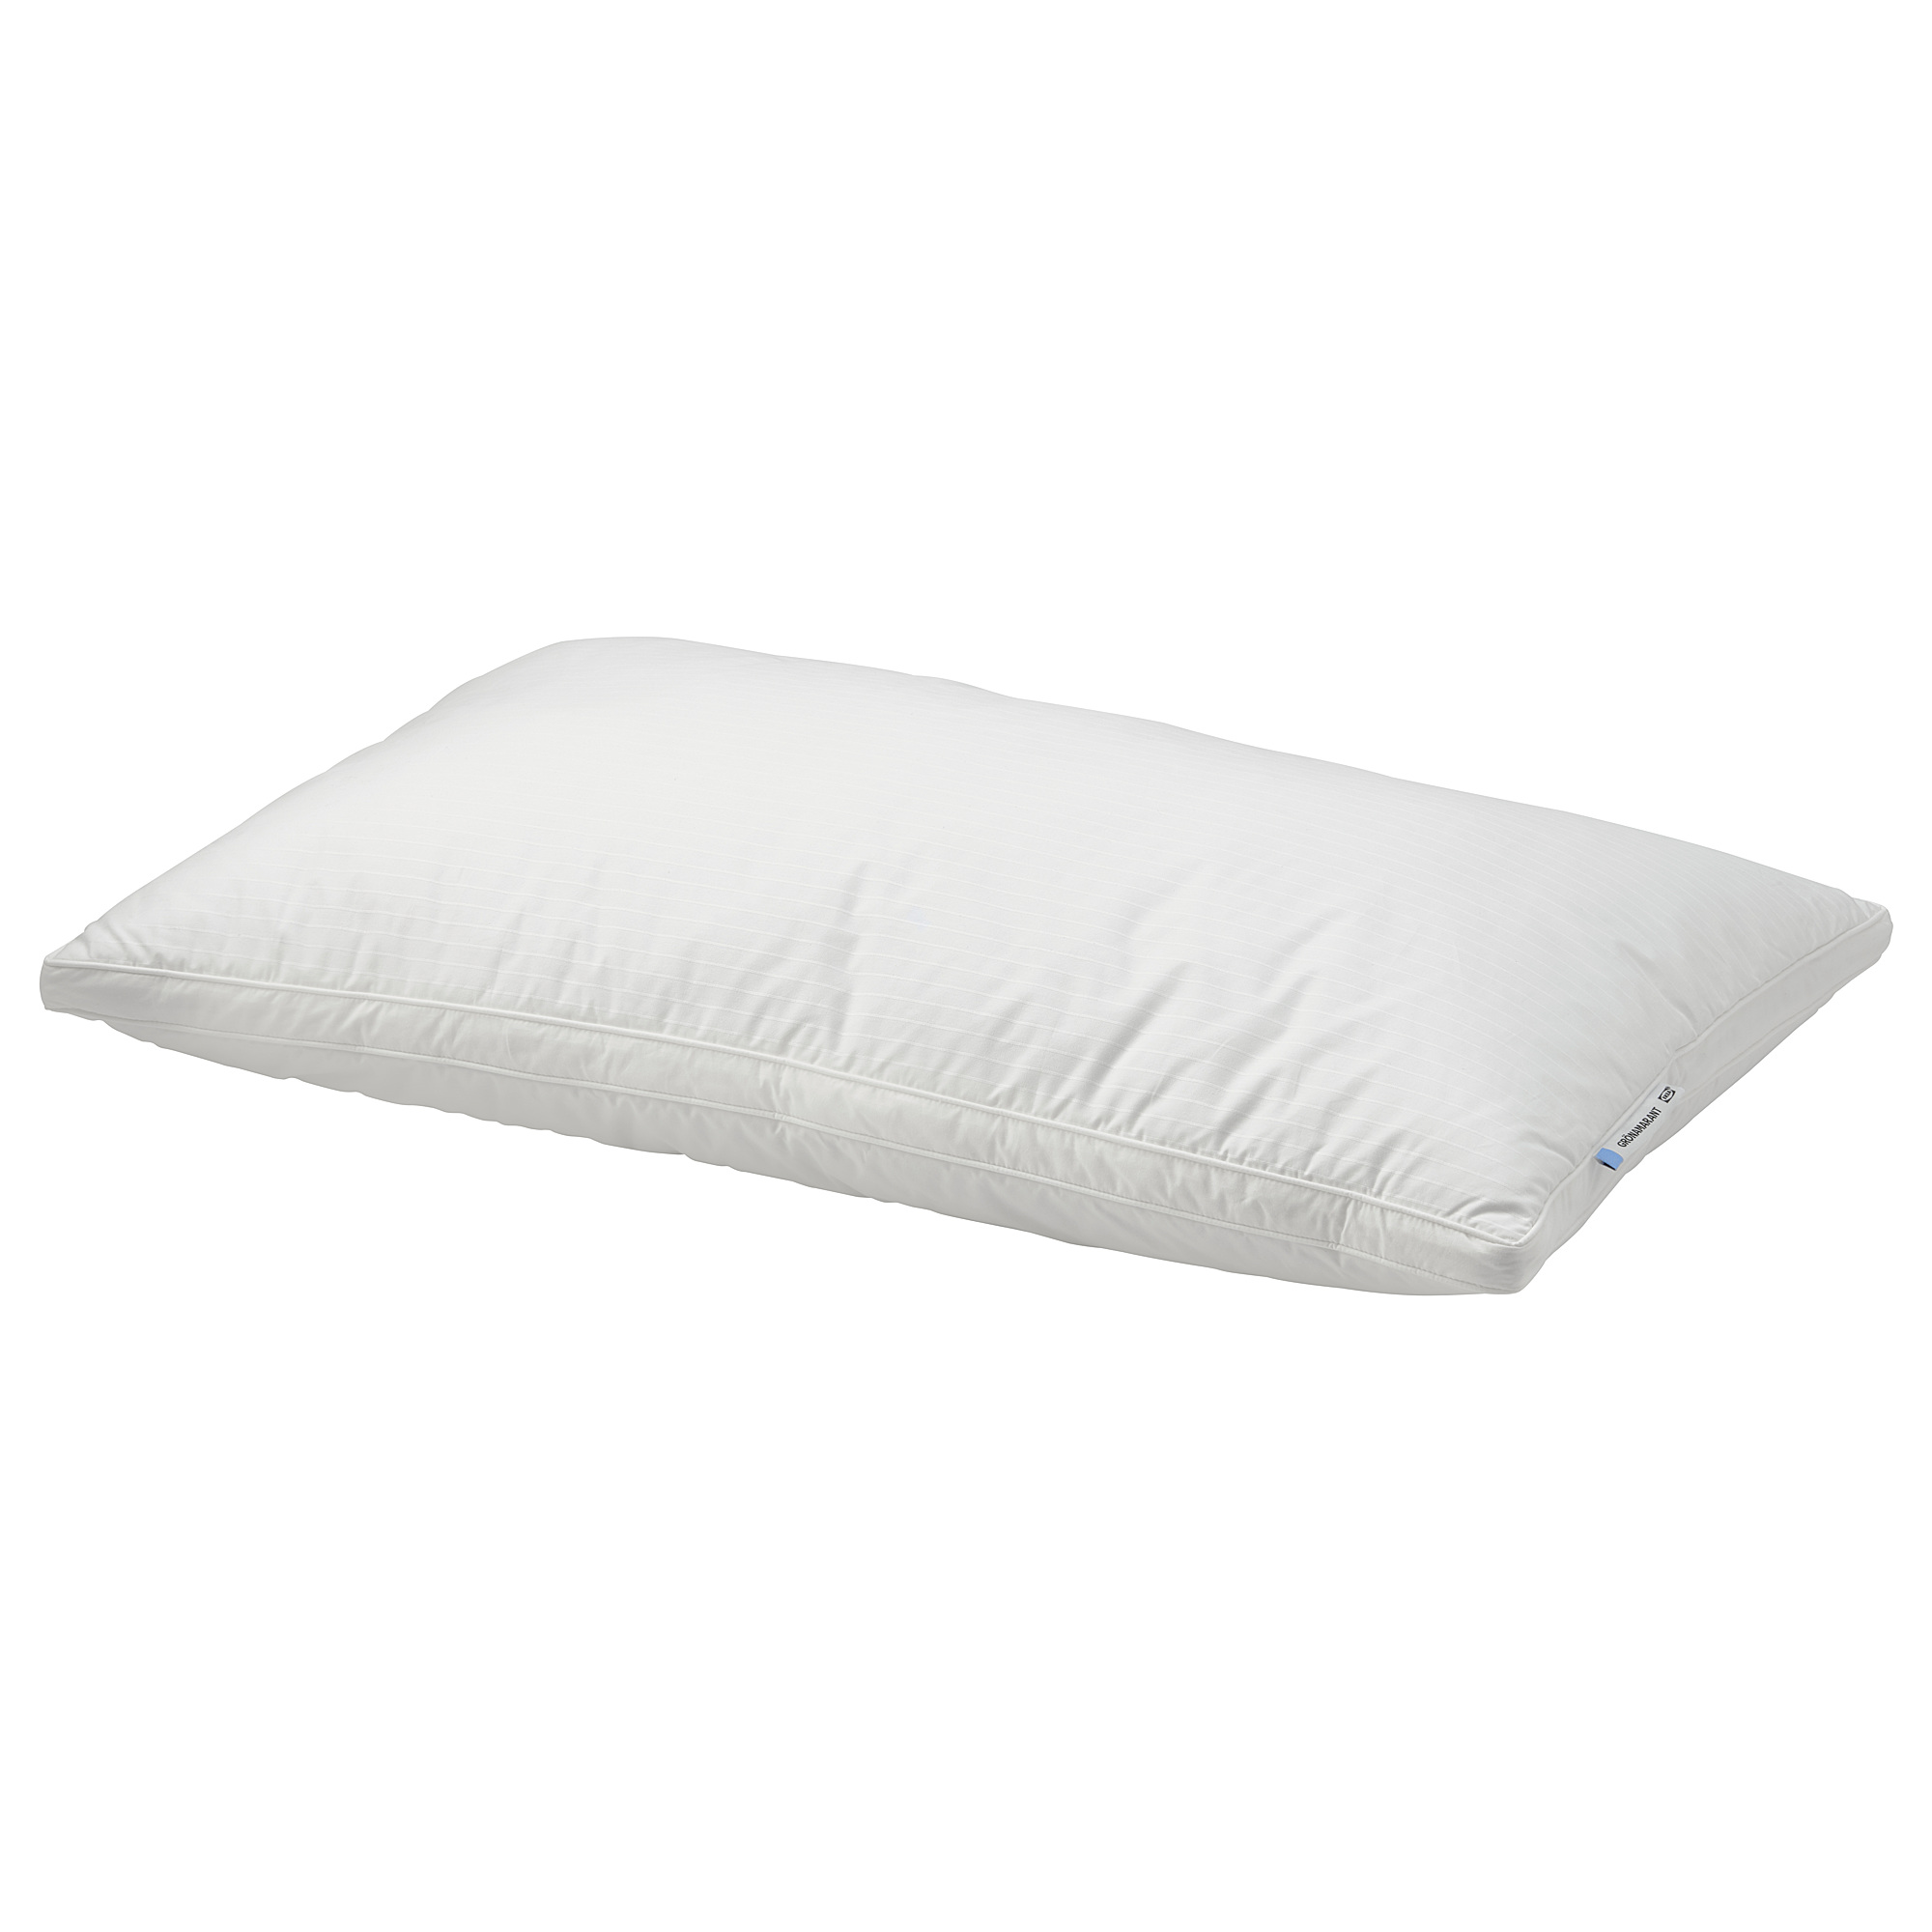 GRÖNAMARANT pillow, low